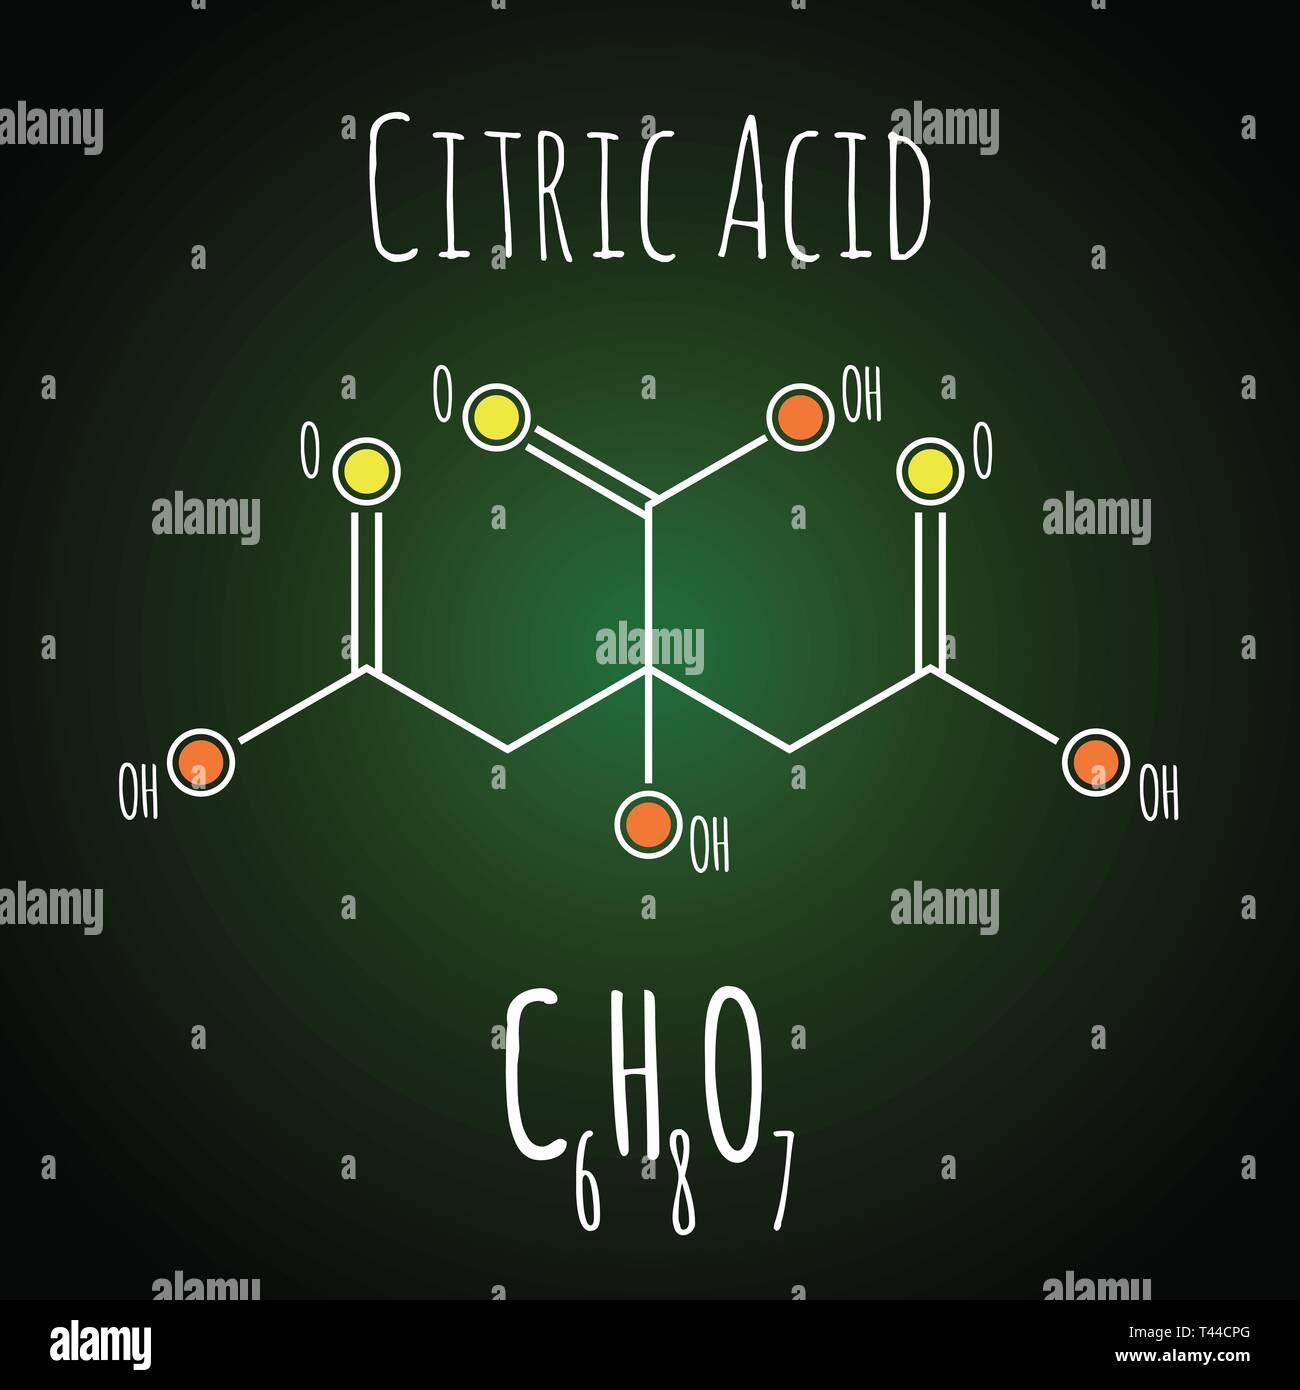 ácido cítrico molecular Imágenes de stock en blanco y negro - Alamy